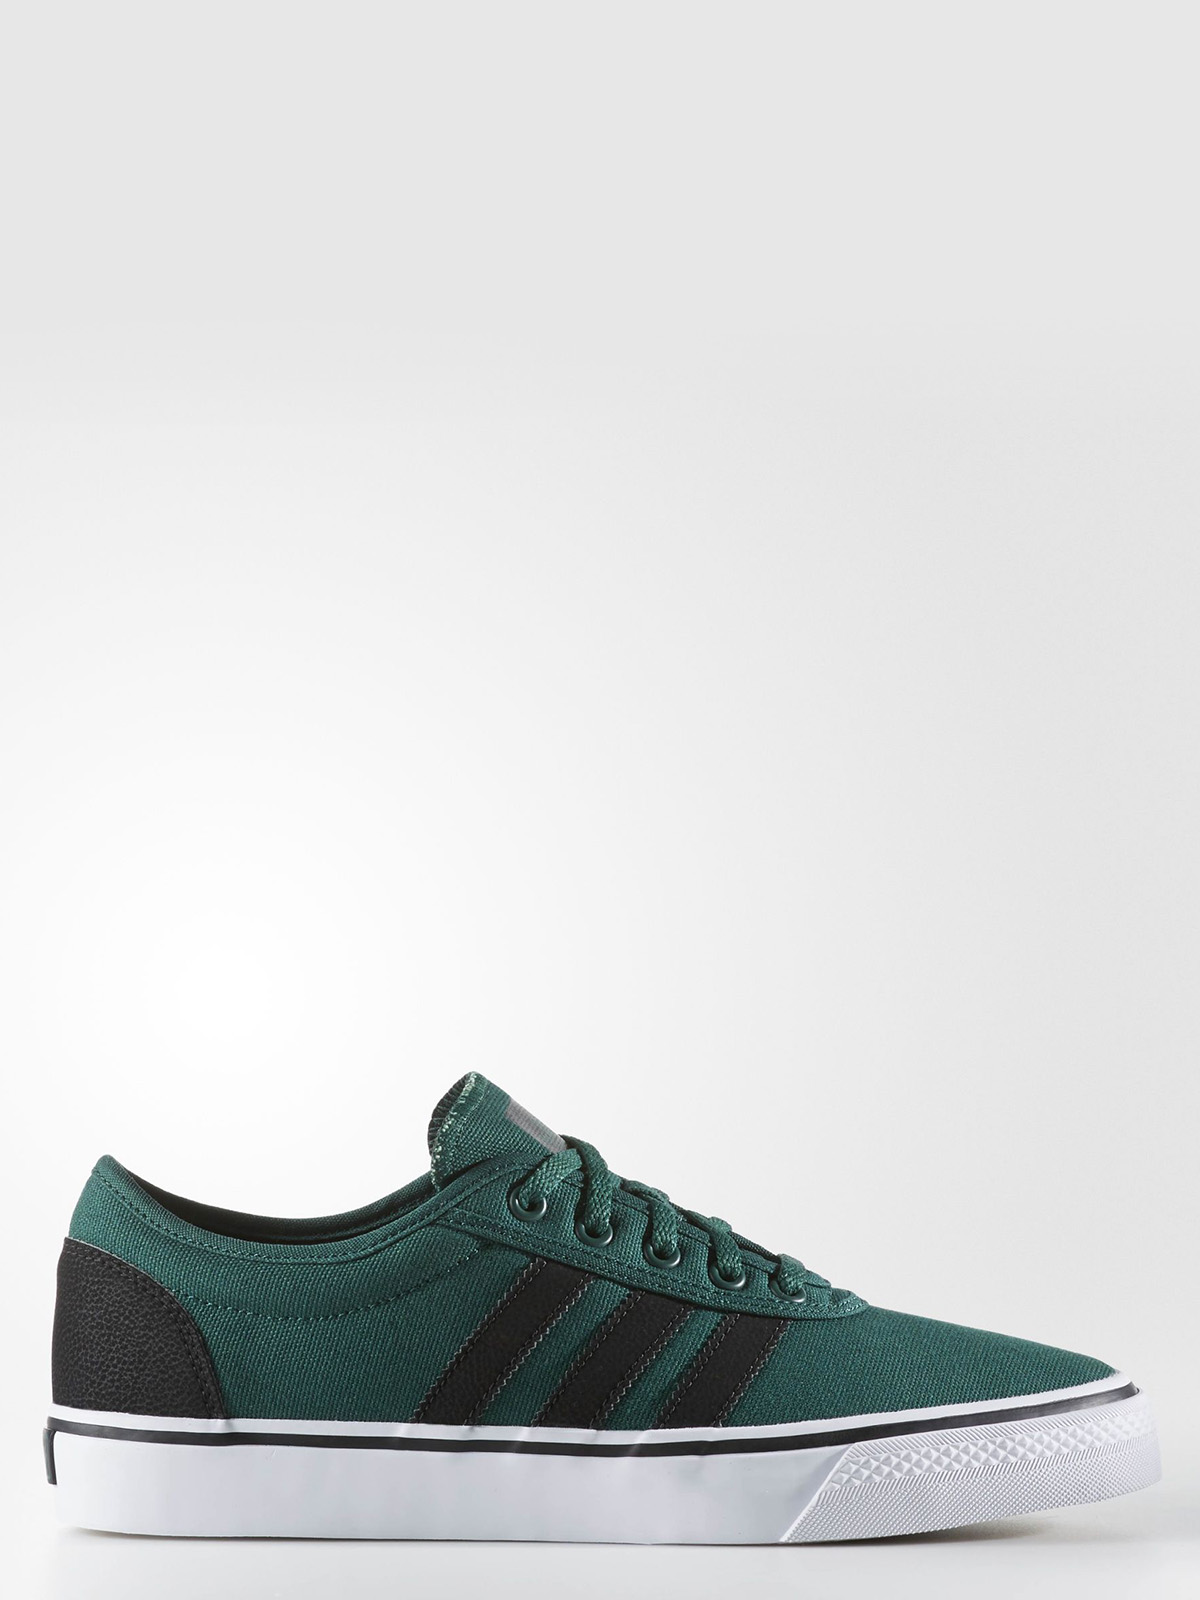 Кеды адидас зеленые. Кеды adidas Originals adi ease. Кроссовки адидас зеленые мужские. Adidas adi 200 Green.